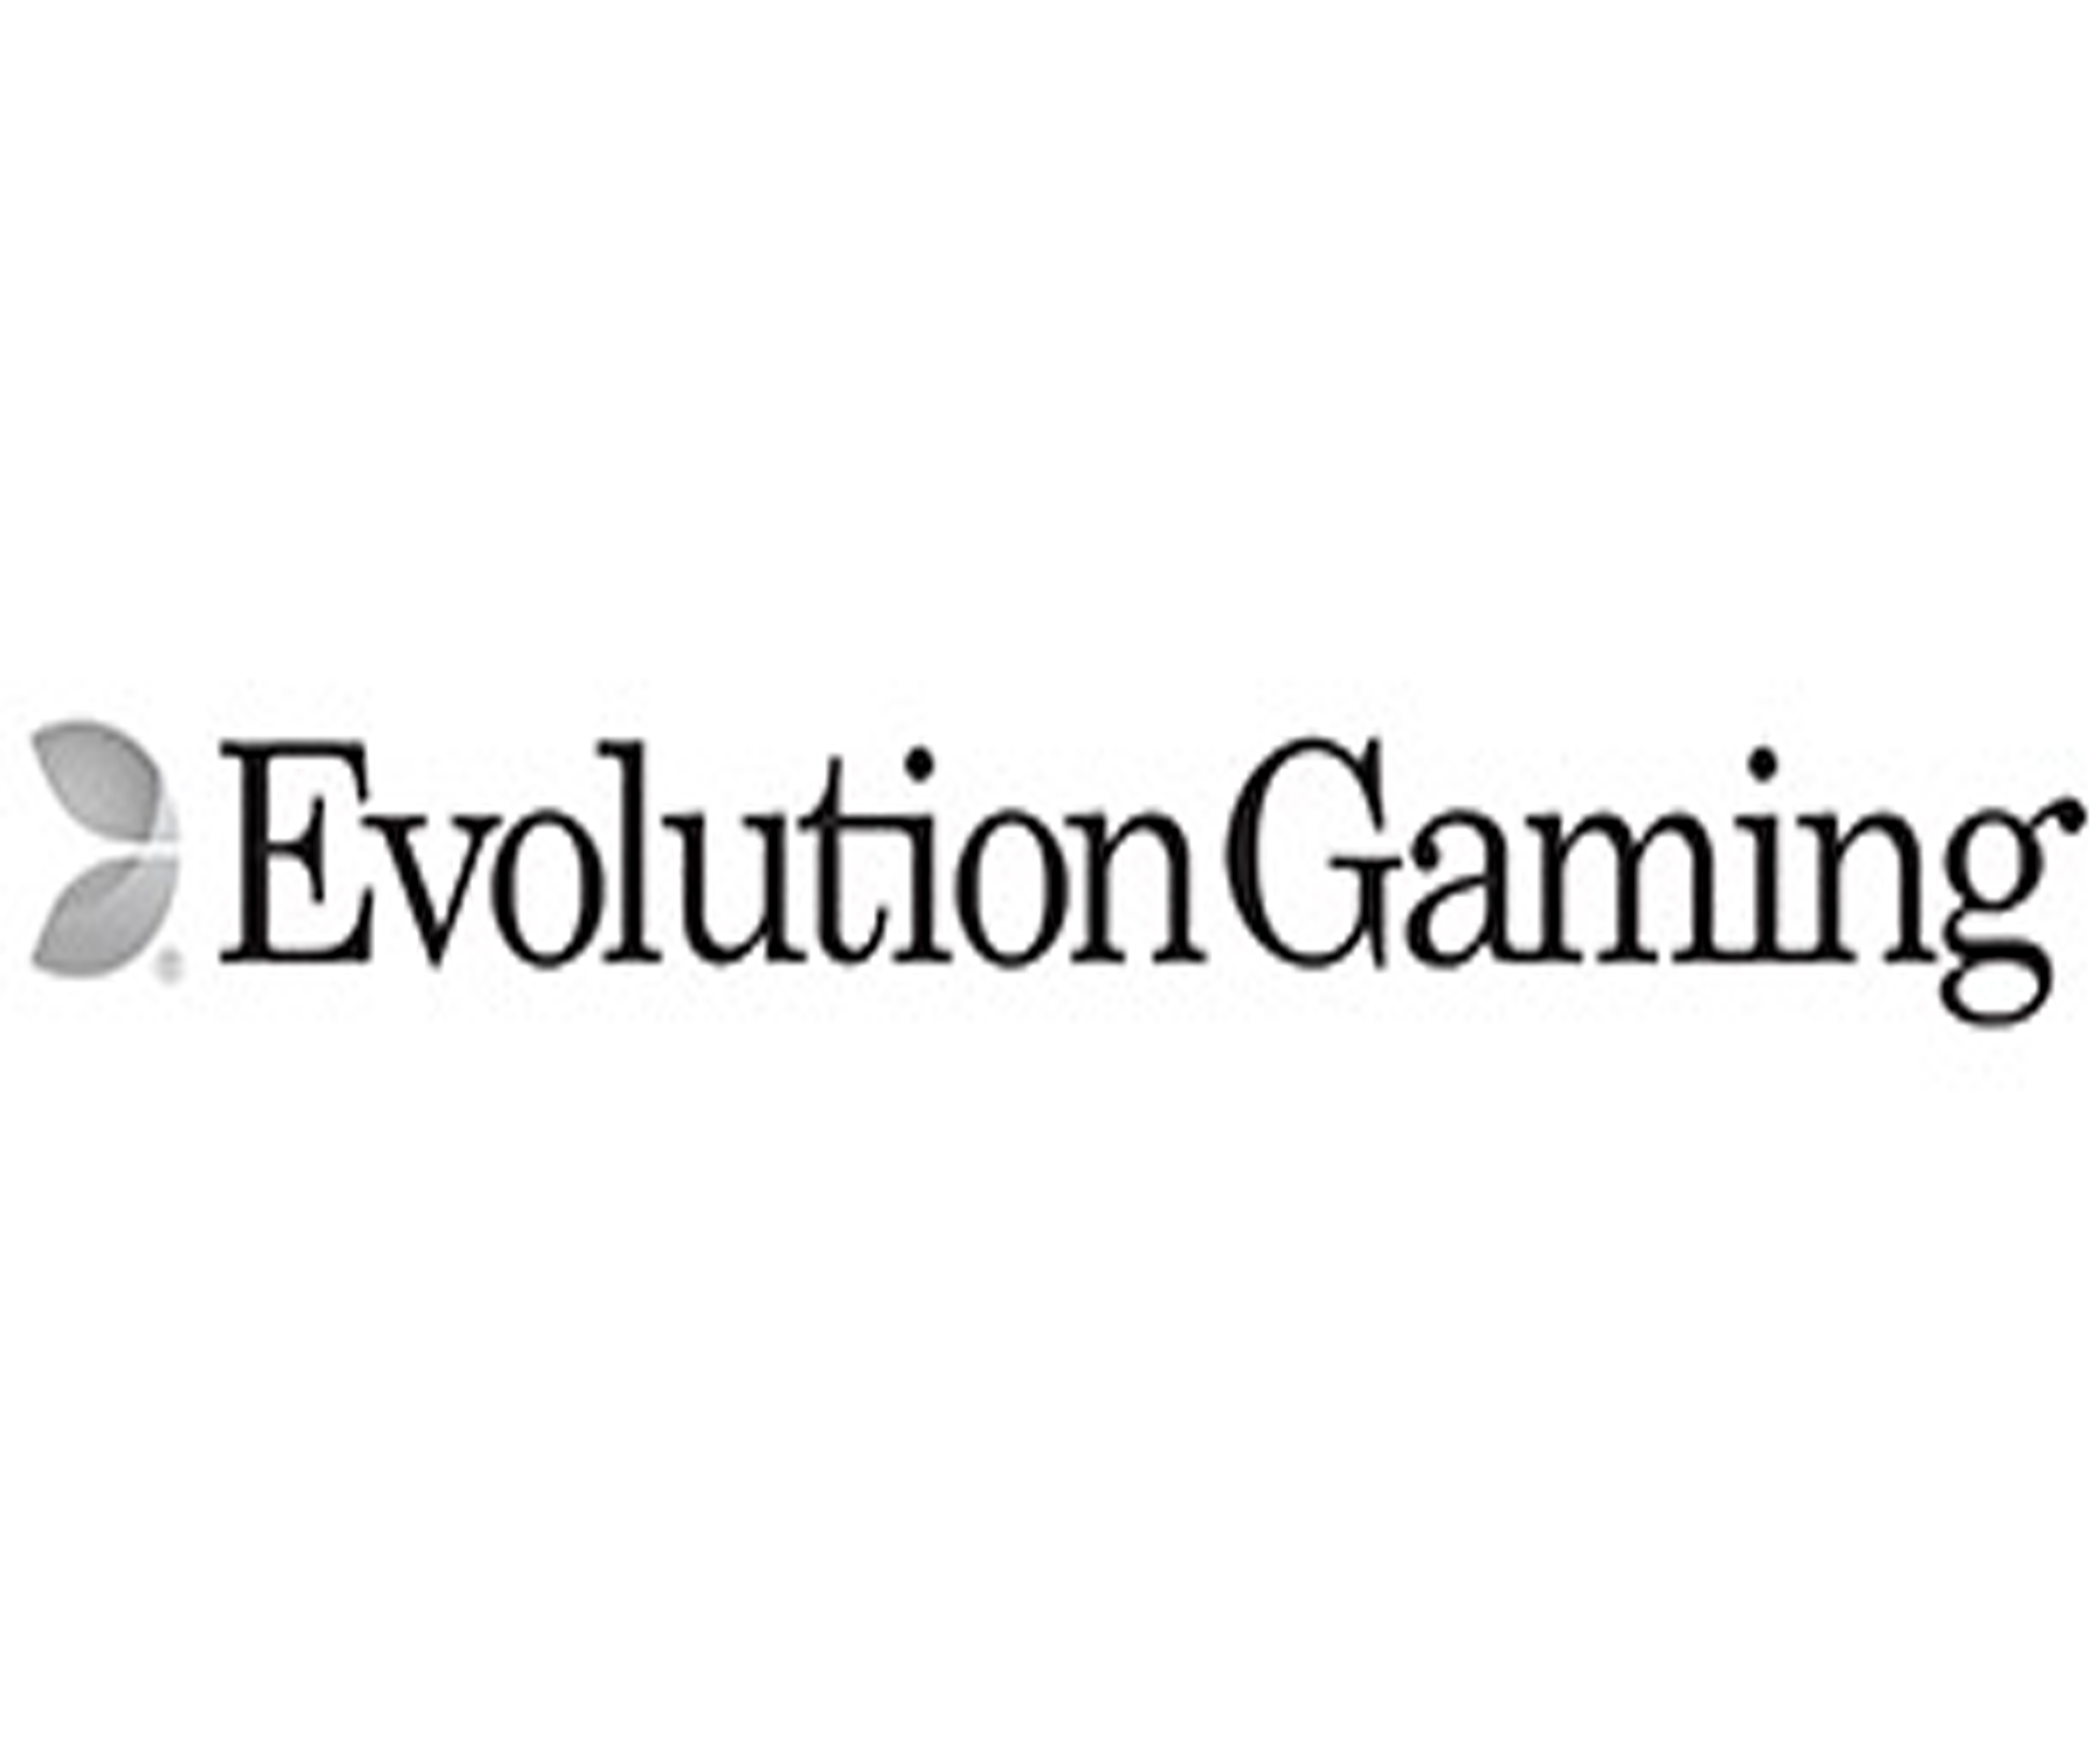 Evolution Gaming Pelopor